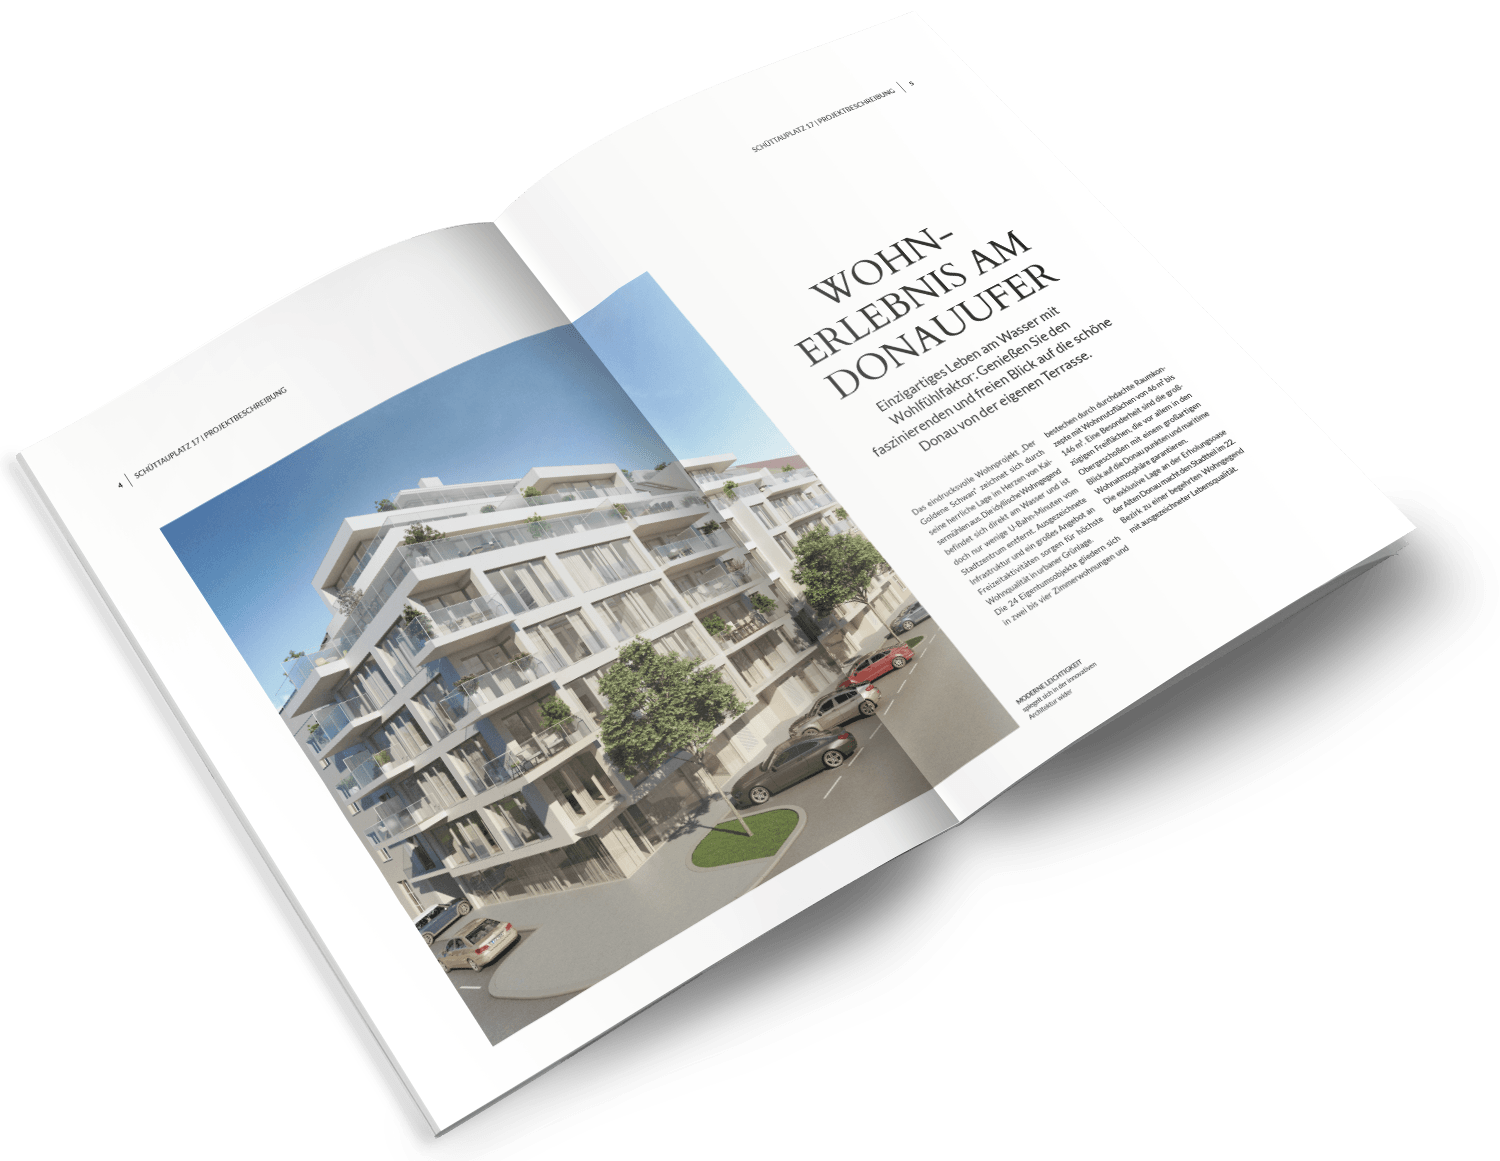 Steiner Immobilien Gruppe - Der Goldene Schwan - Folder Design